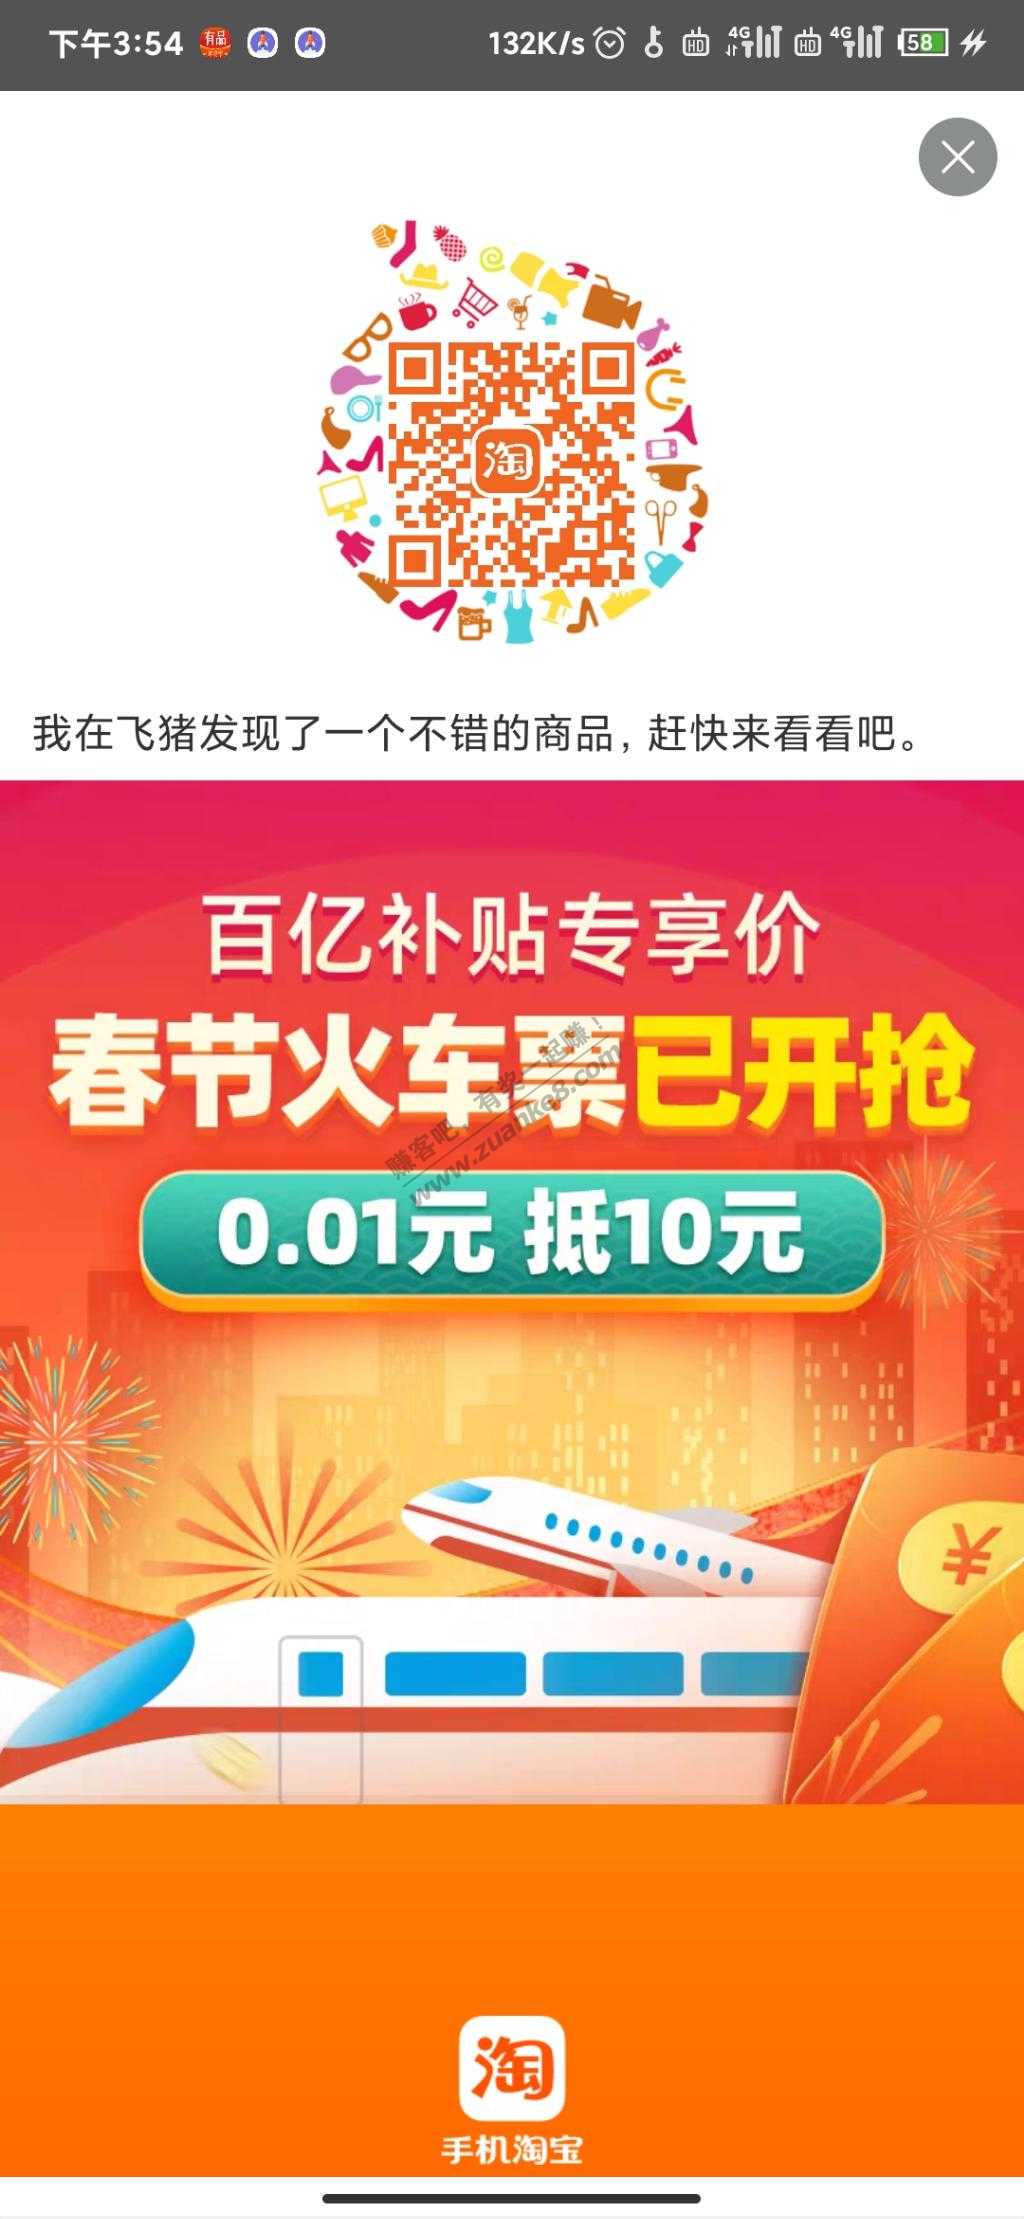 火车票11-10-惠小助(52huixz.com)